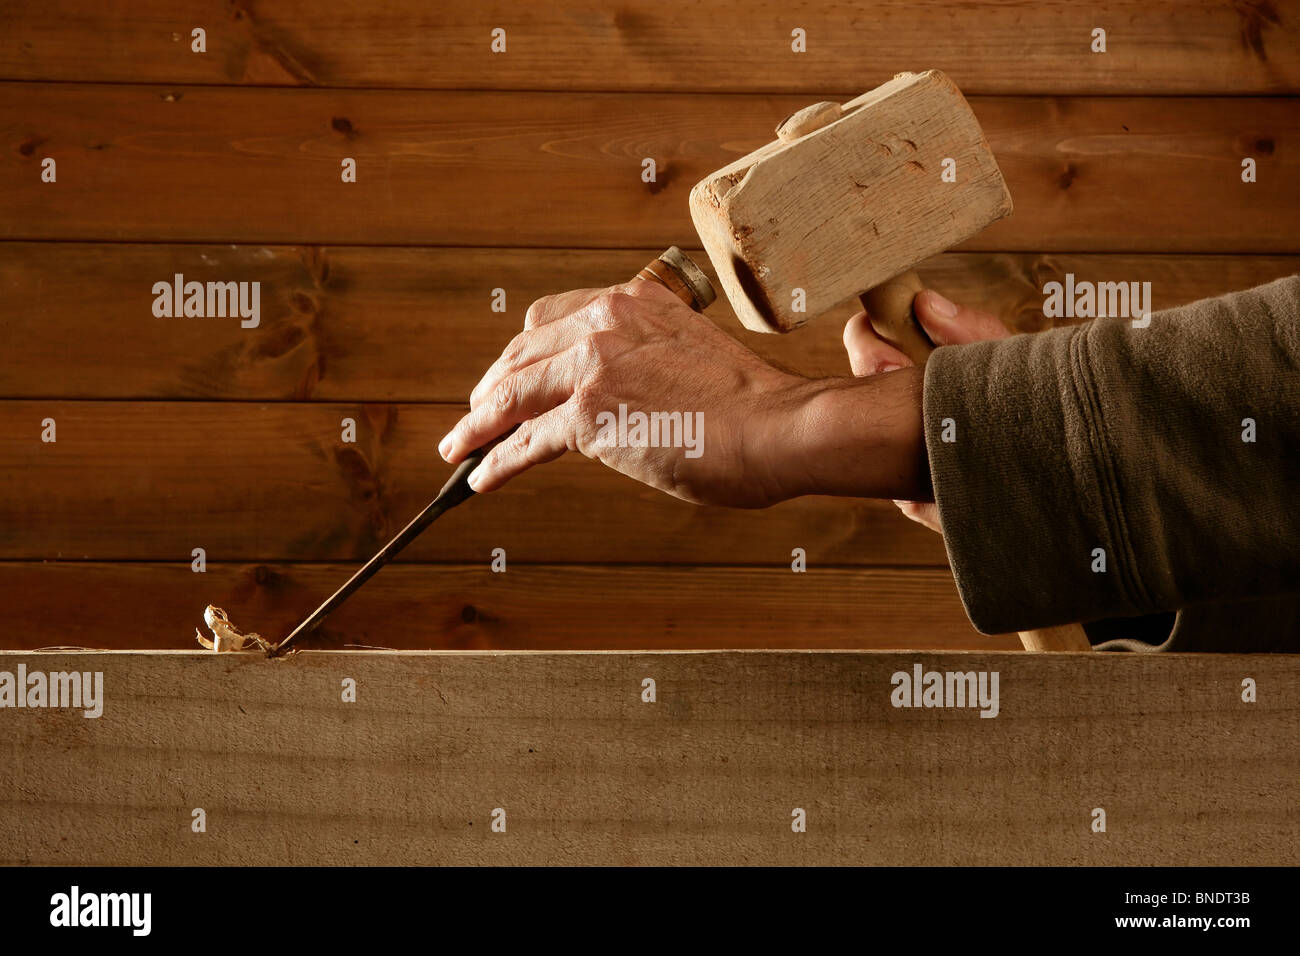 Hohlmeißel Holz Stemmeisen Tischler Werkzeug hammer in der hand Arbeiten aus Holz Hintergrund Stockfoto